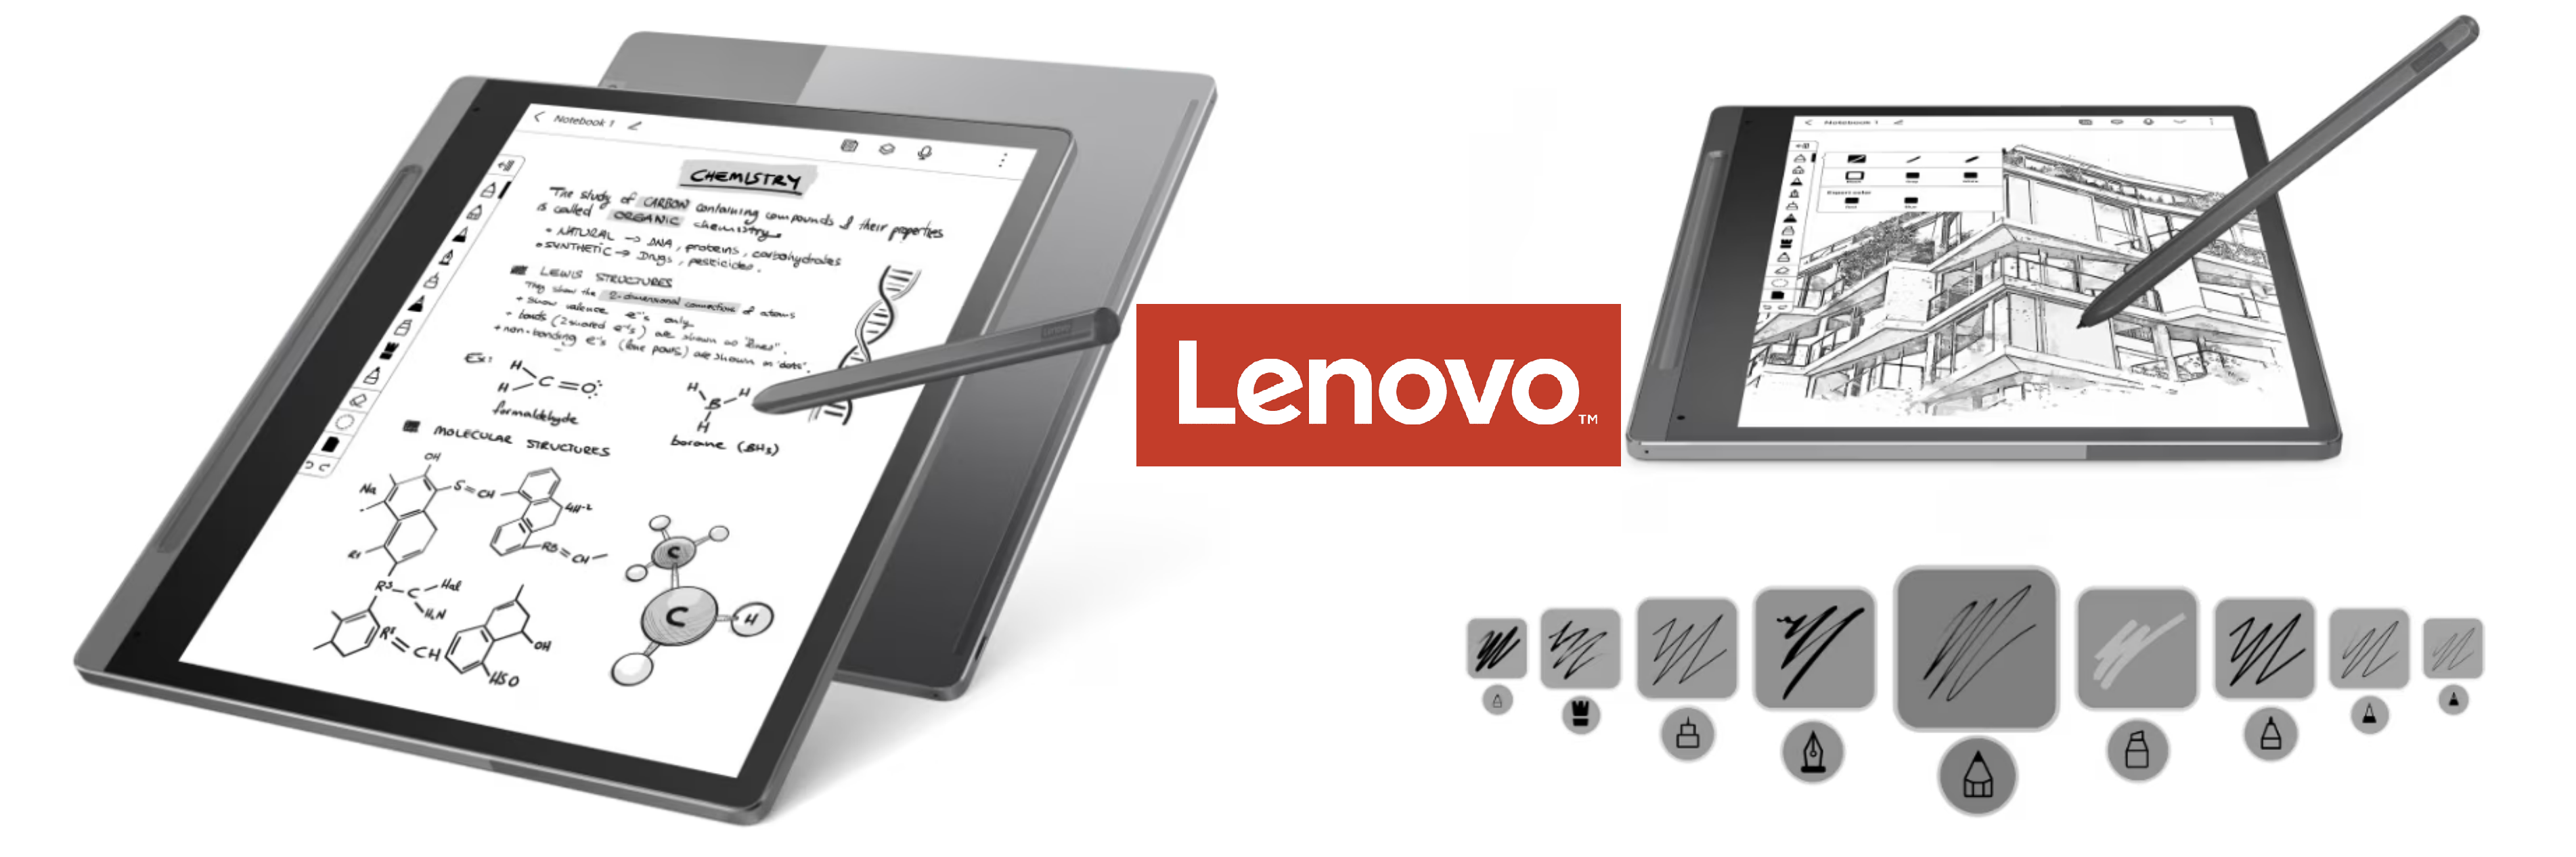 E-Ink新品：Lenovo Smart Paper──大廠聯想的又一次E-Ink嘗試